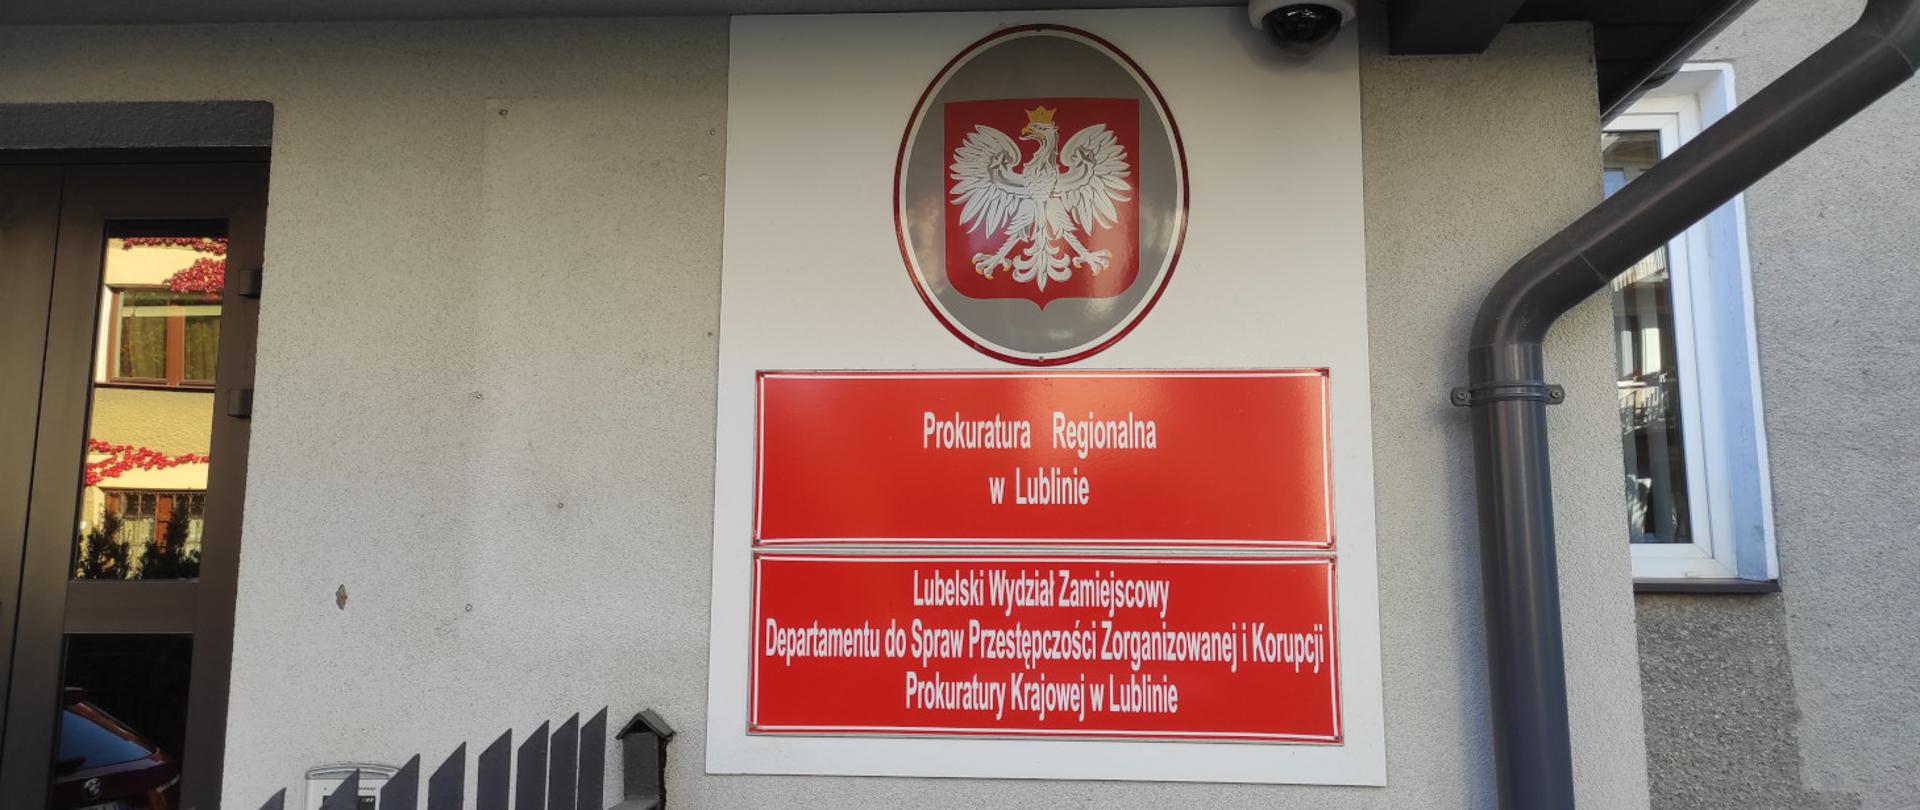 Wejście do budynku na ul. Głowackiego 13 oraz tablice informacyjne